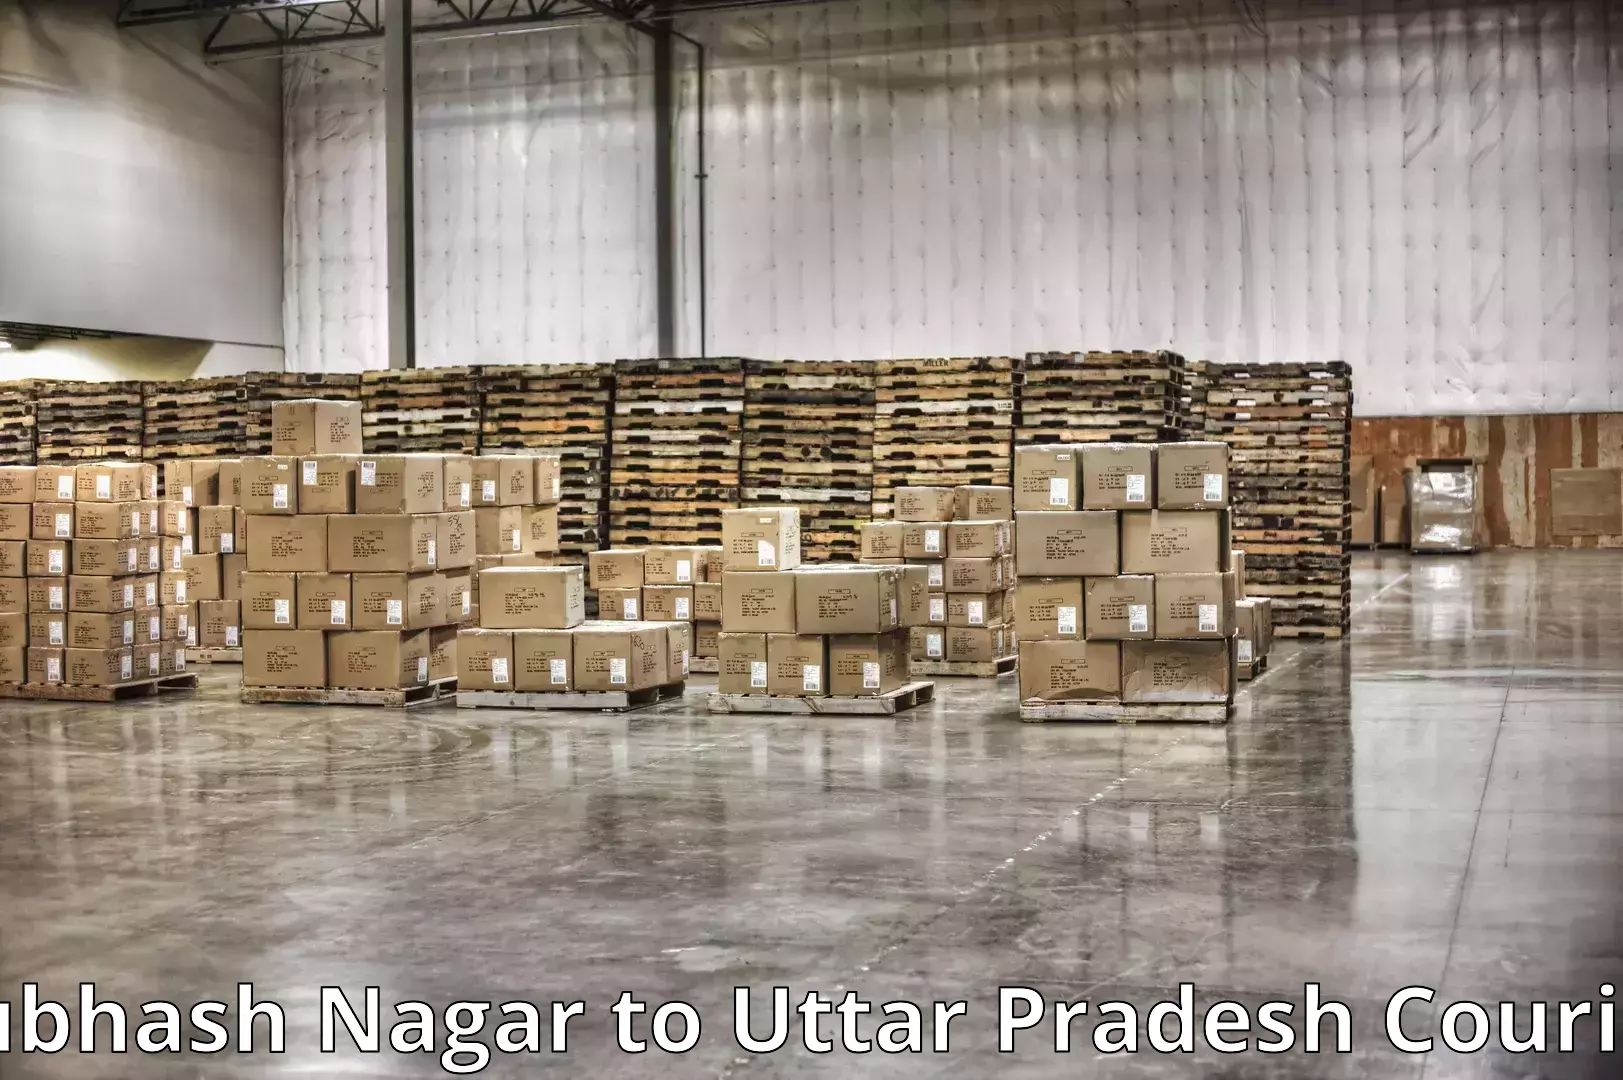 Professional moving company Subhash Nagar to Mahoba